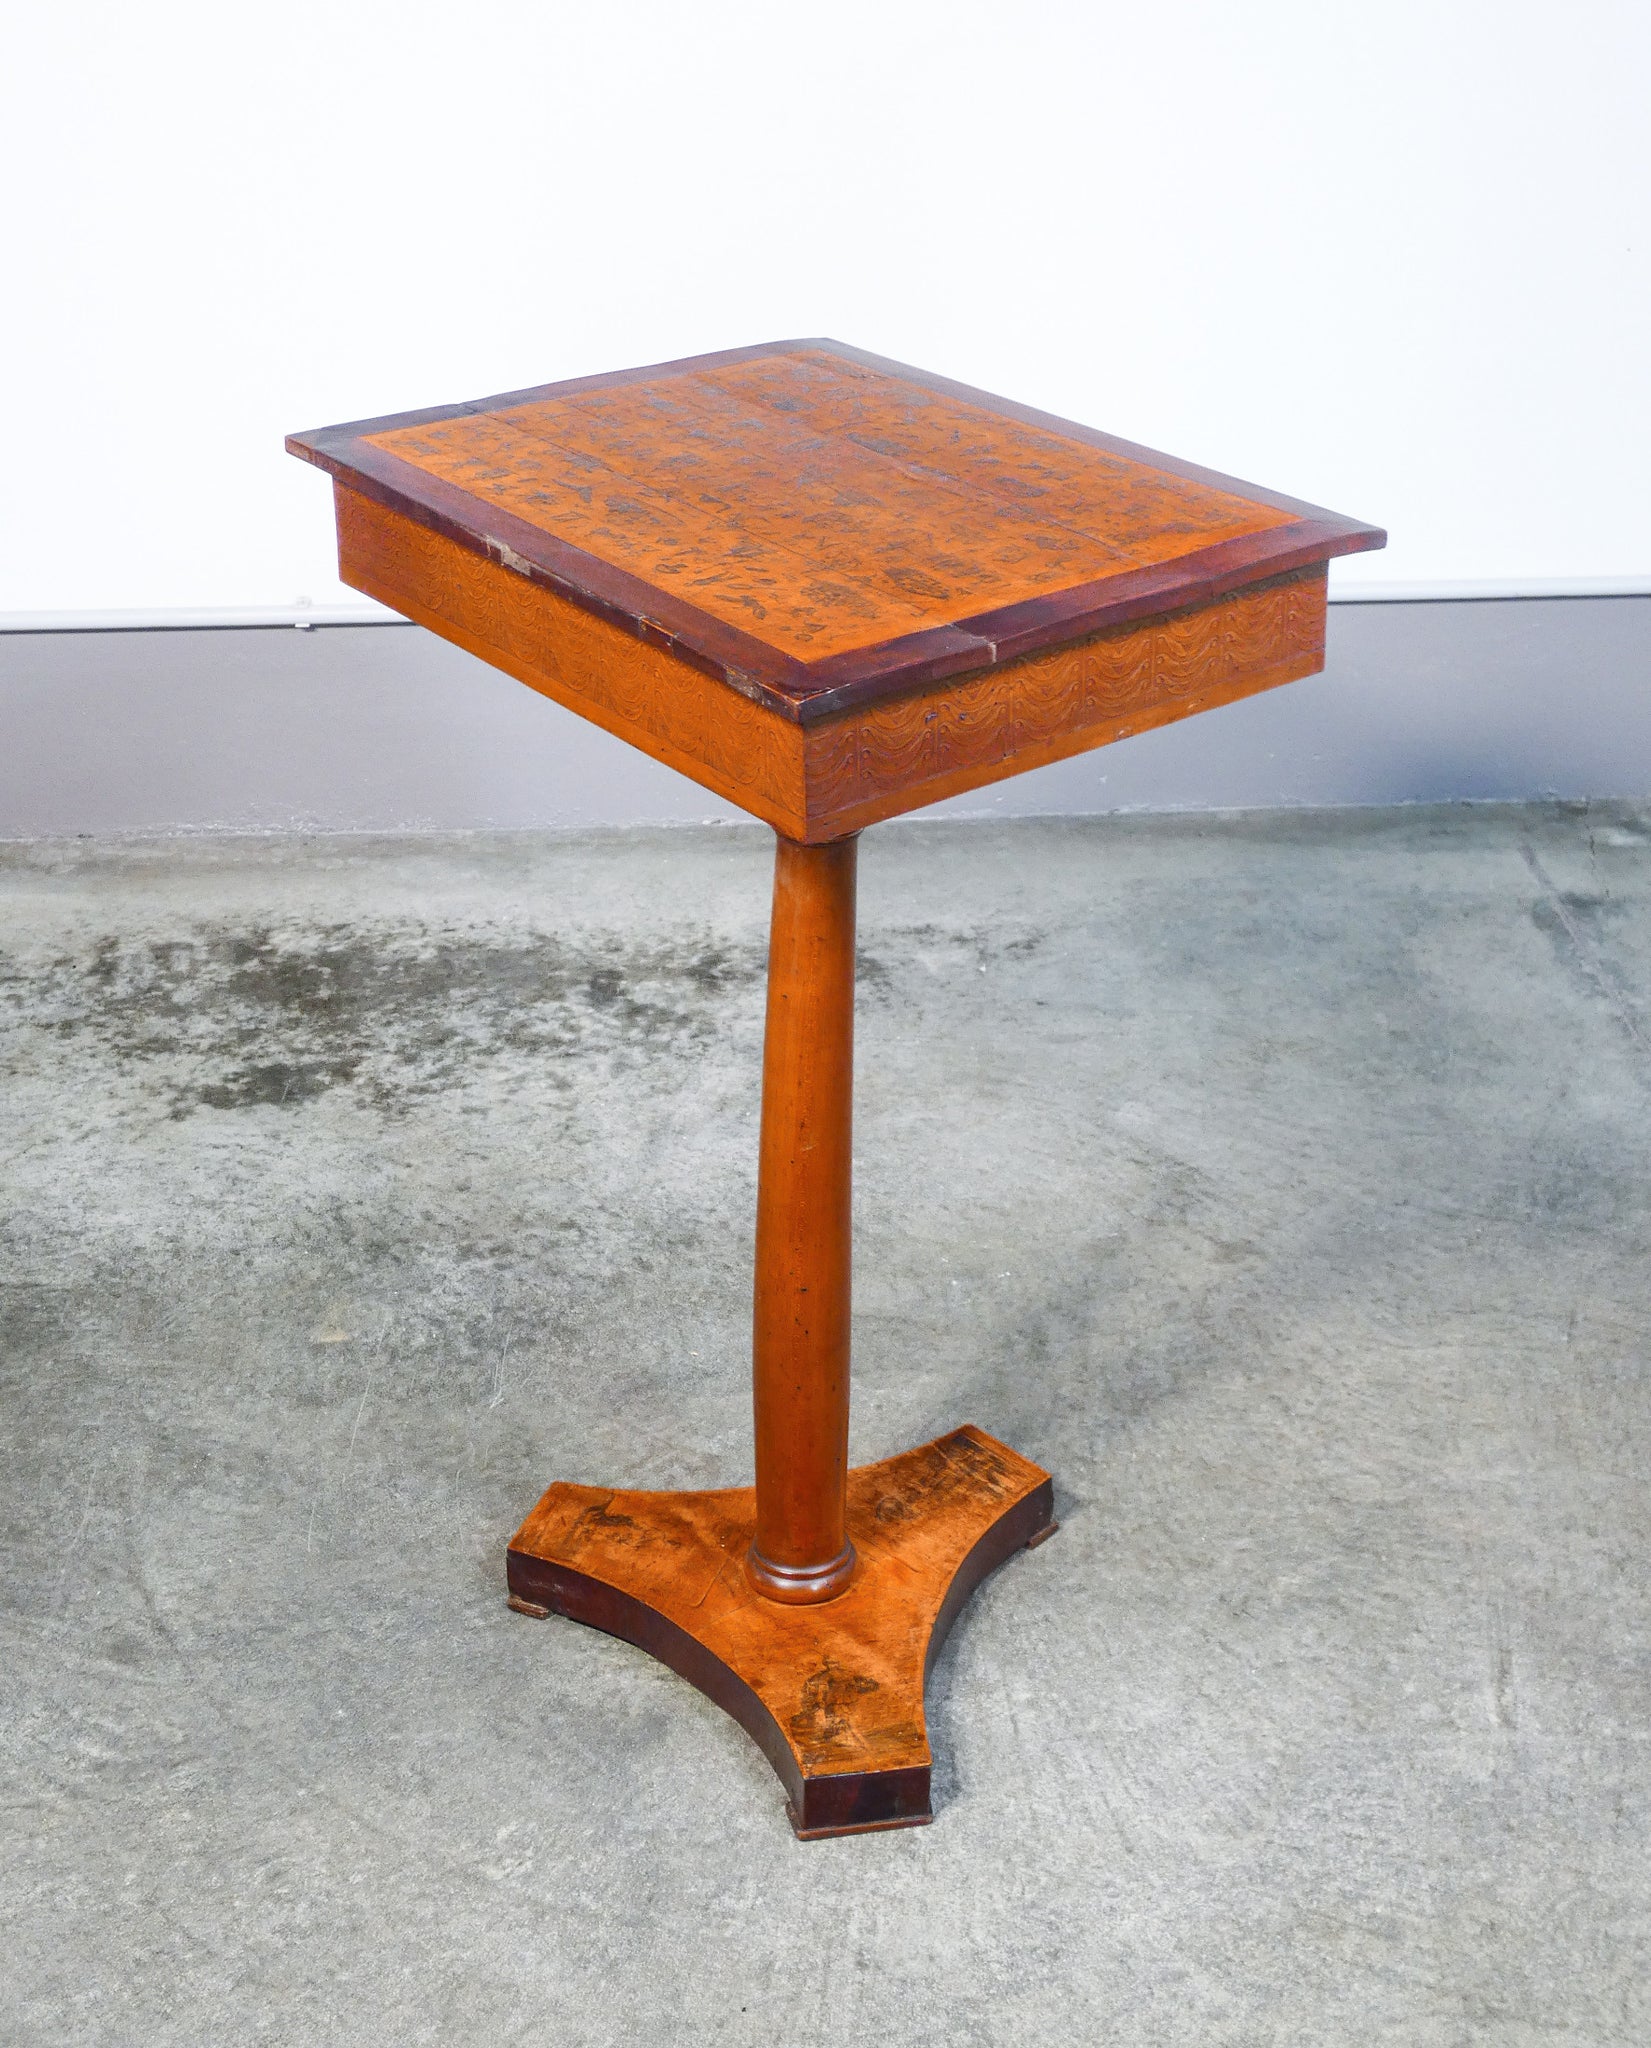 tavolino cucito legno decorato tricoteuse epoca 1800 cassetto gueridon antico